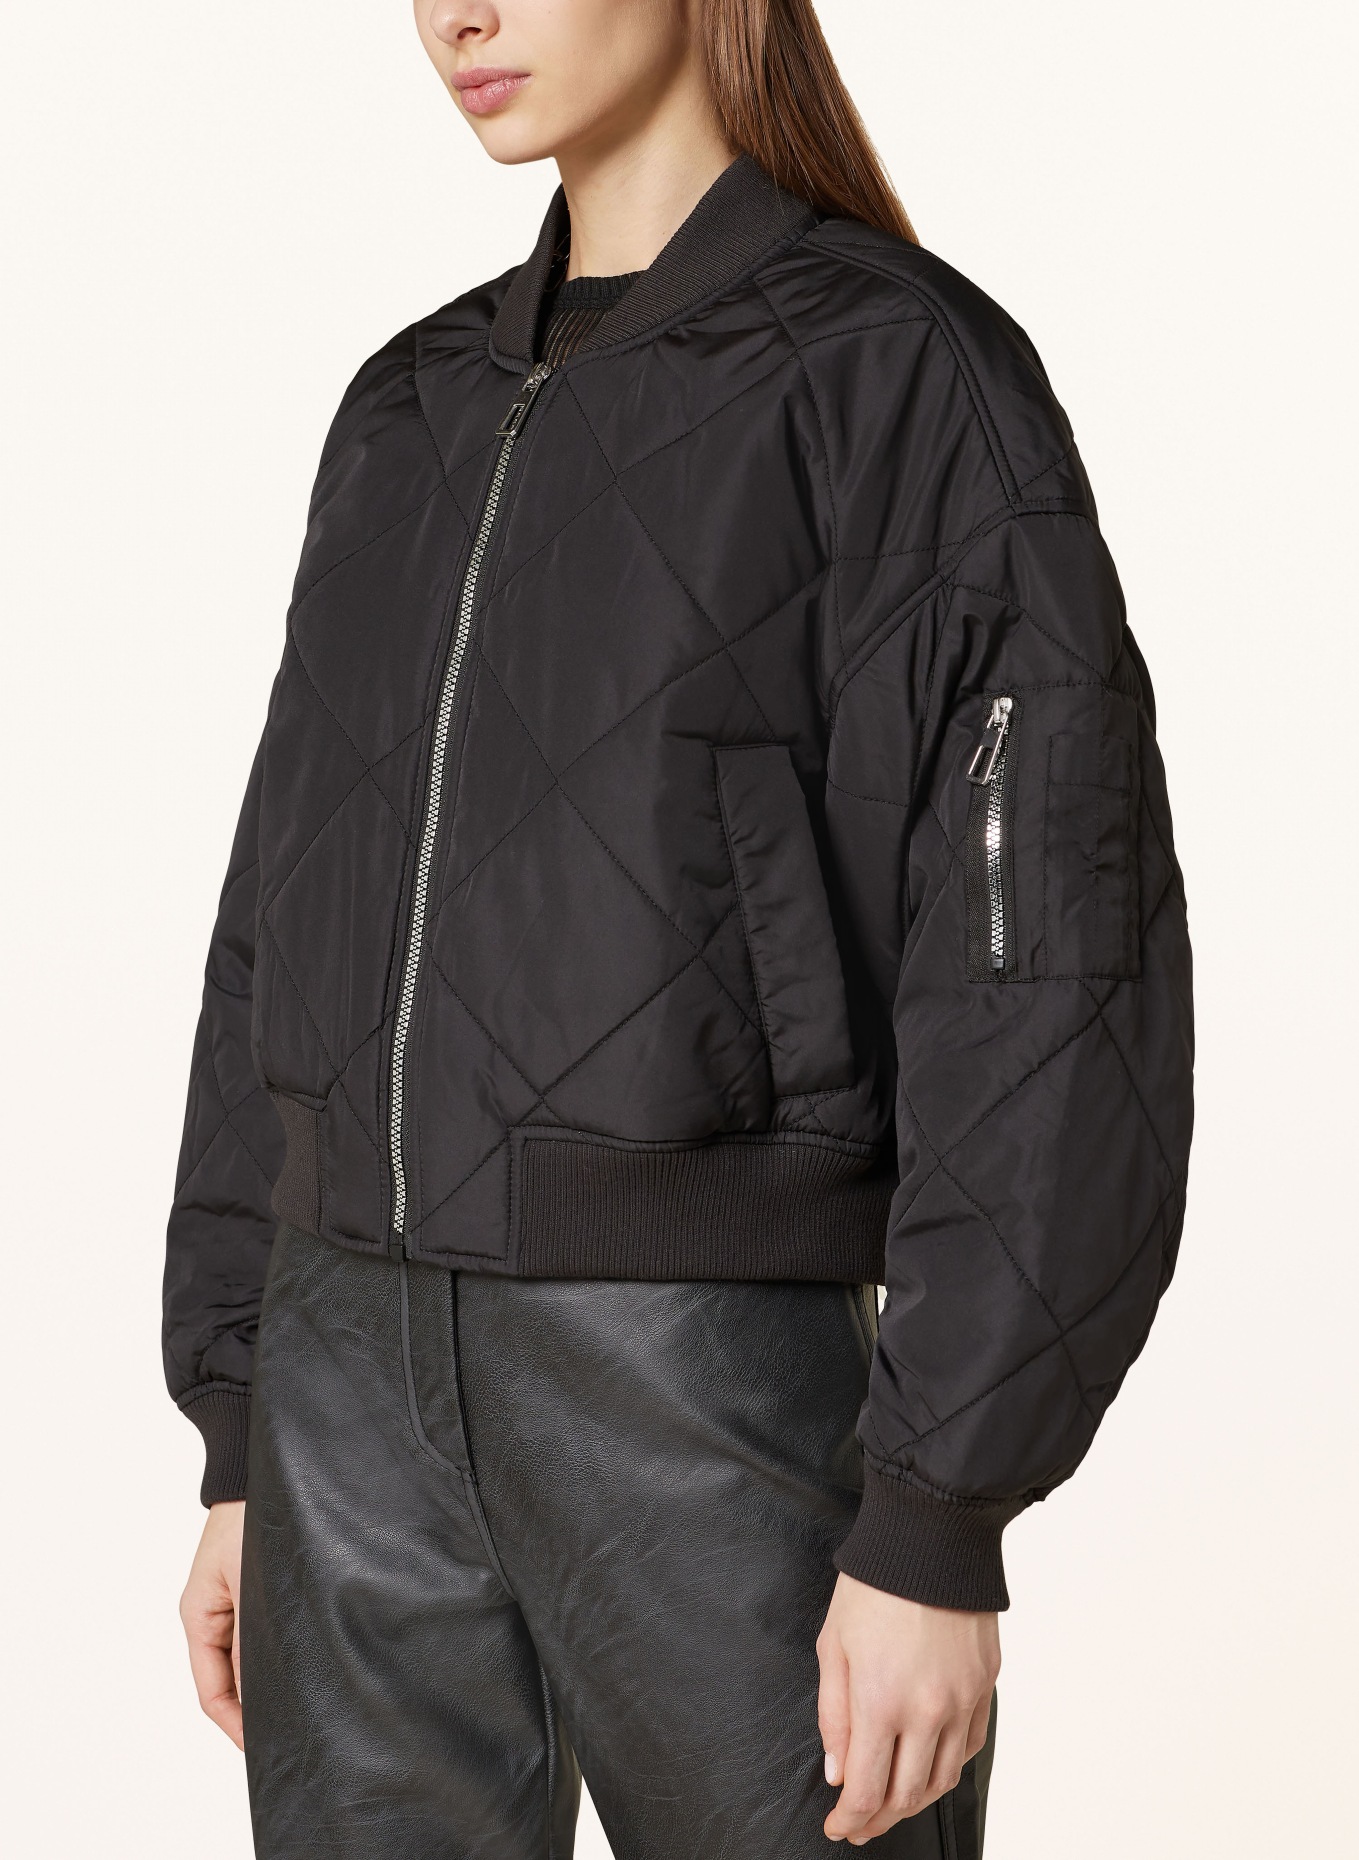 ONLY Bomber jacket, Color: BLACK (Image 4)